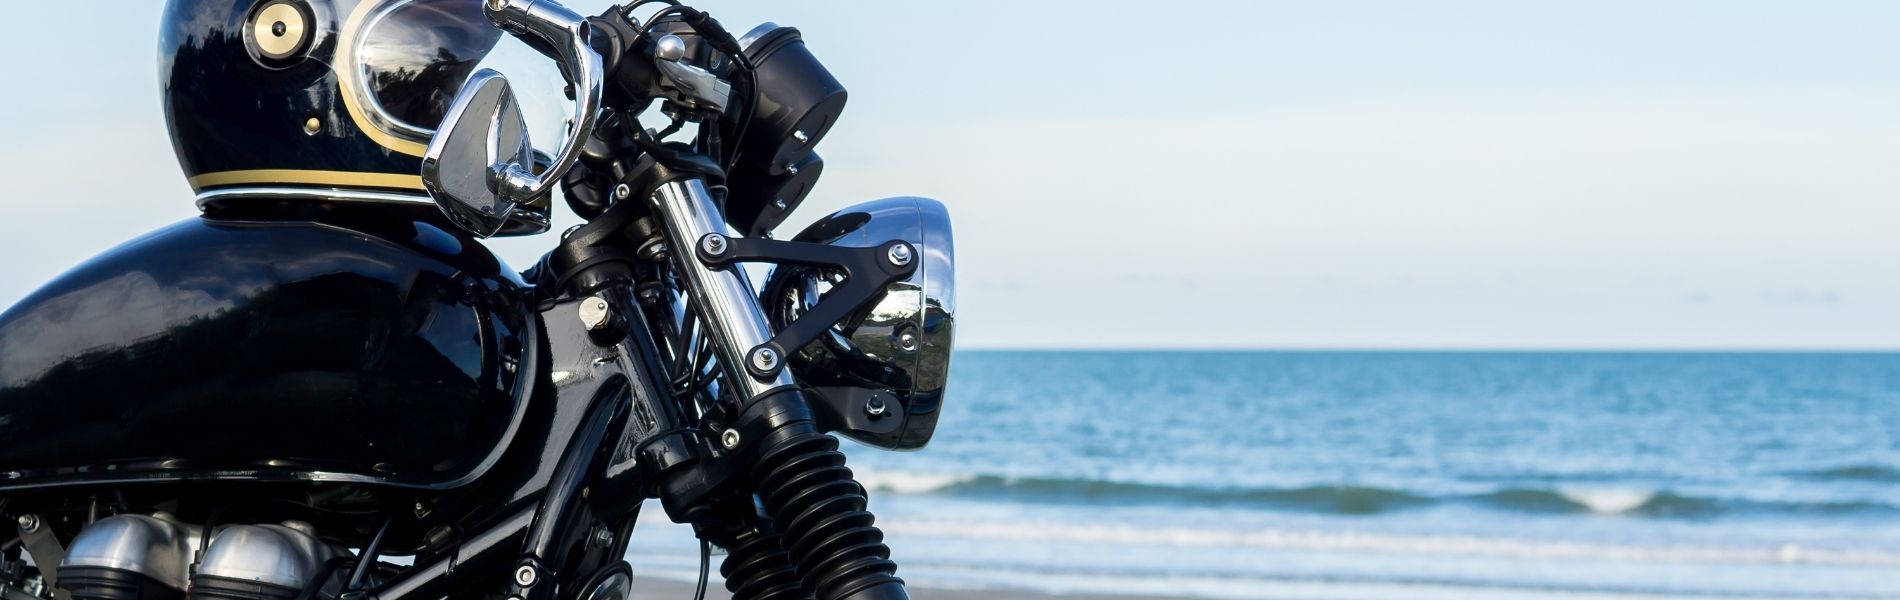 black motorcycle by the ocean